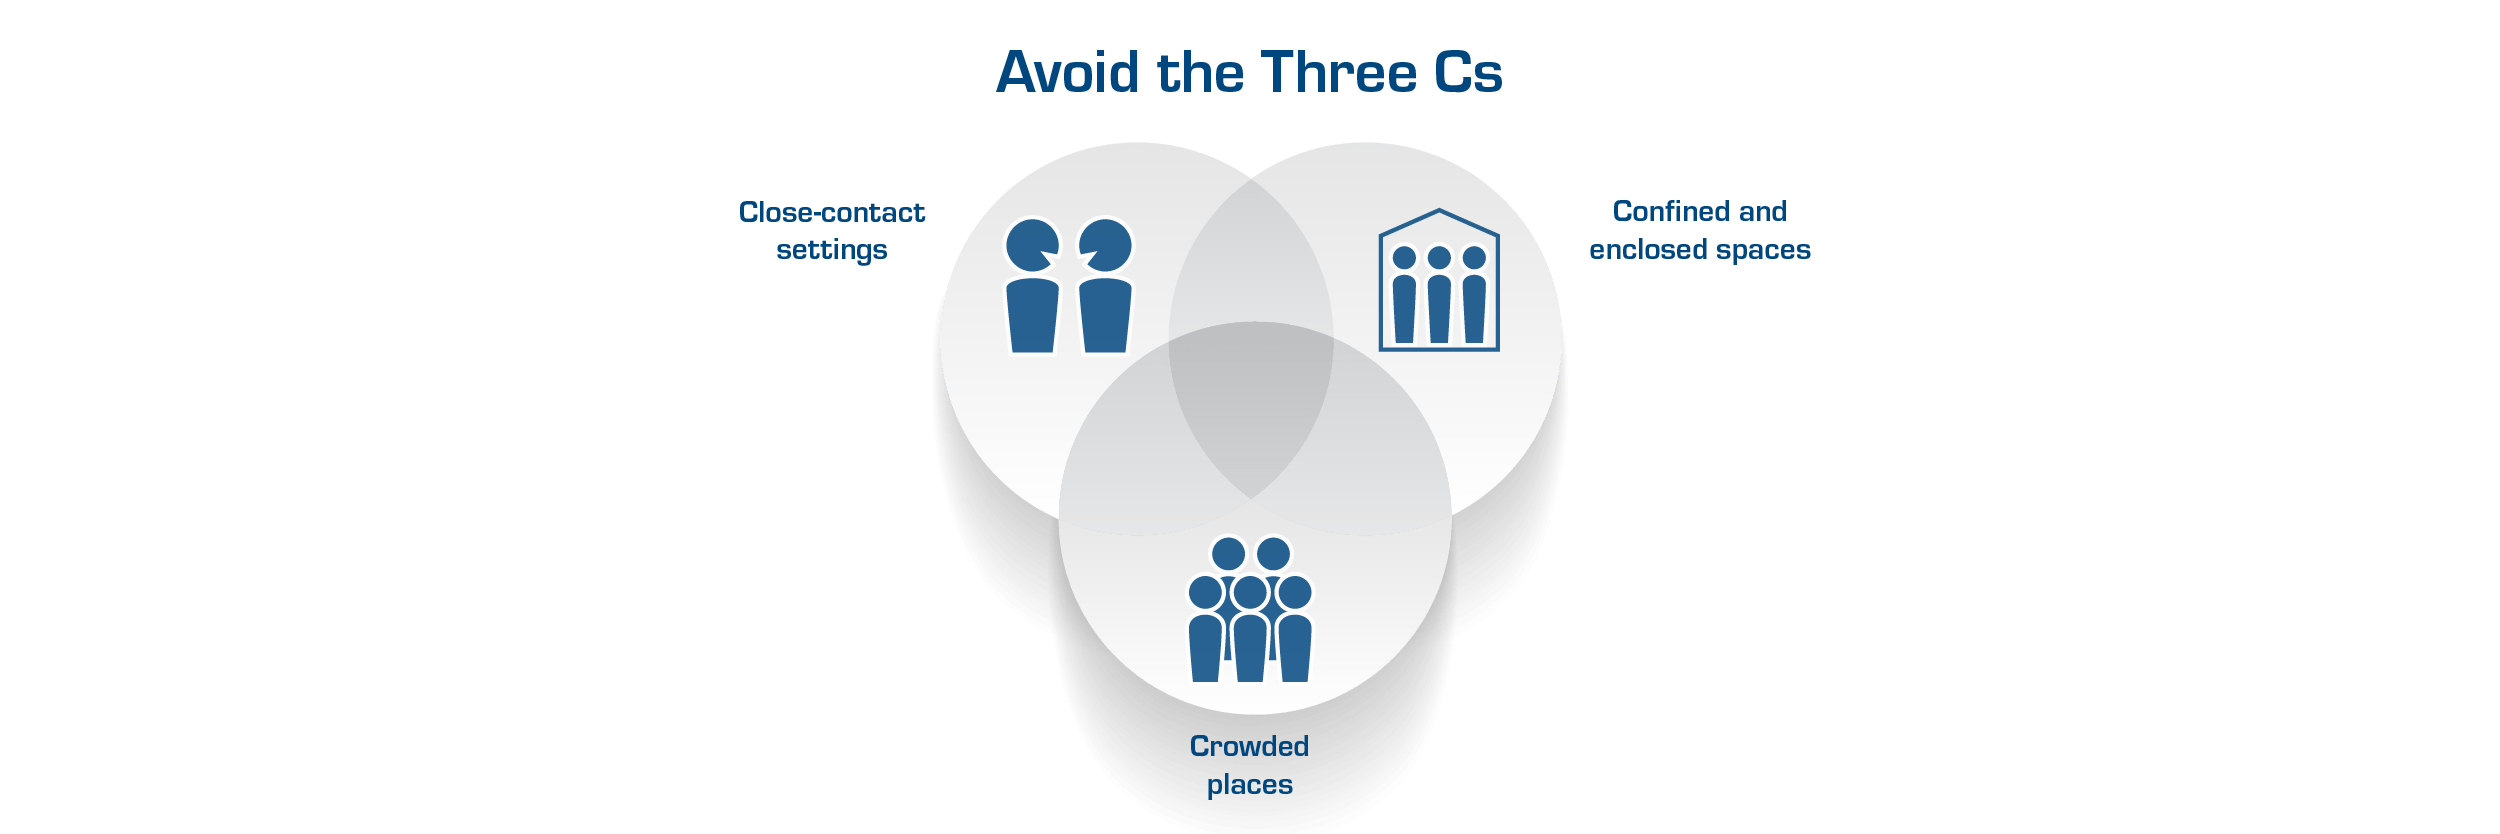 Avoid the 3Cs